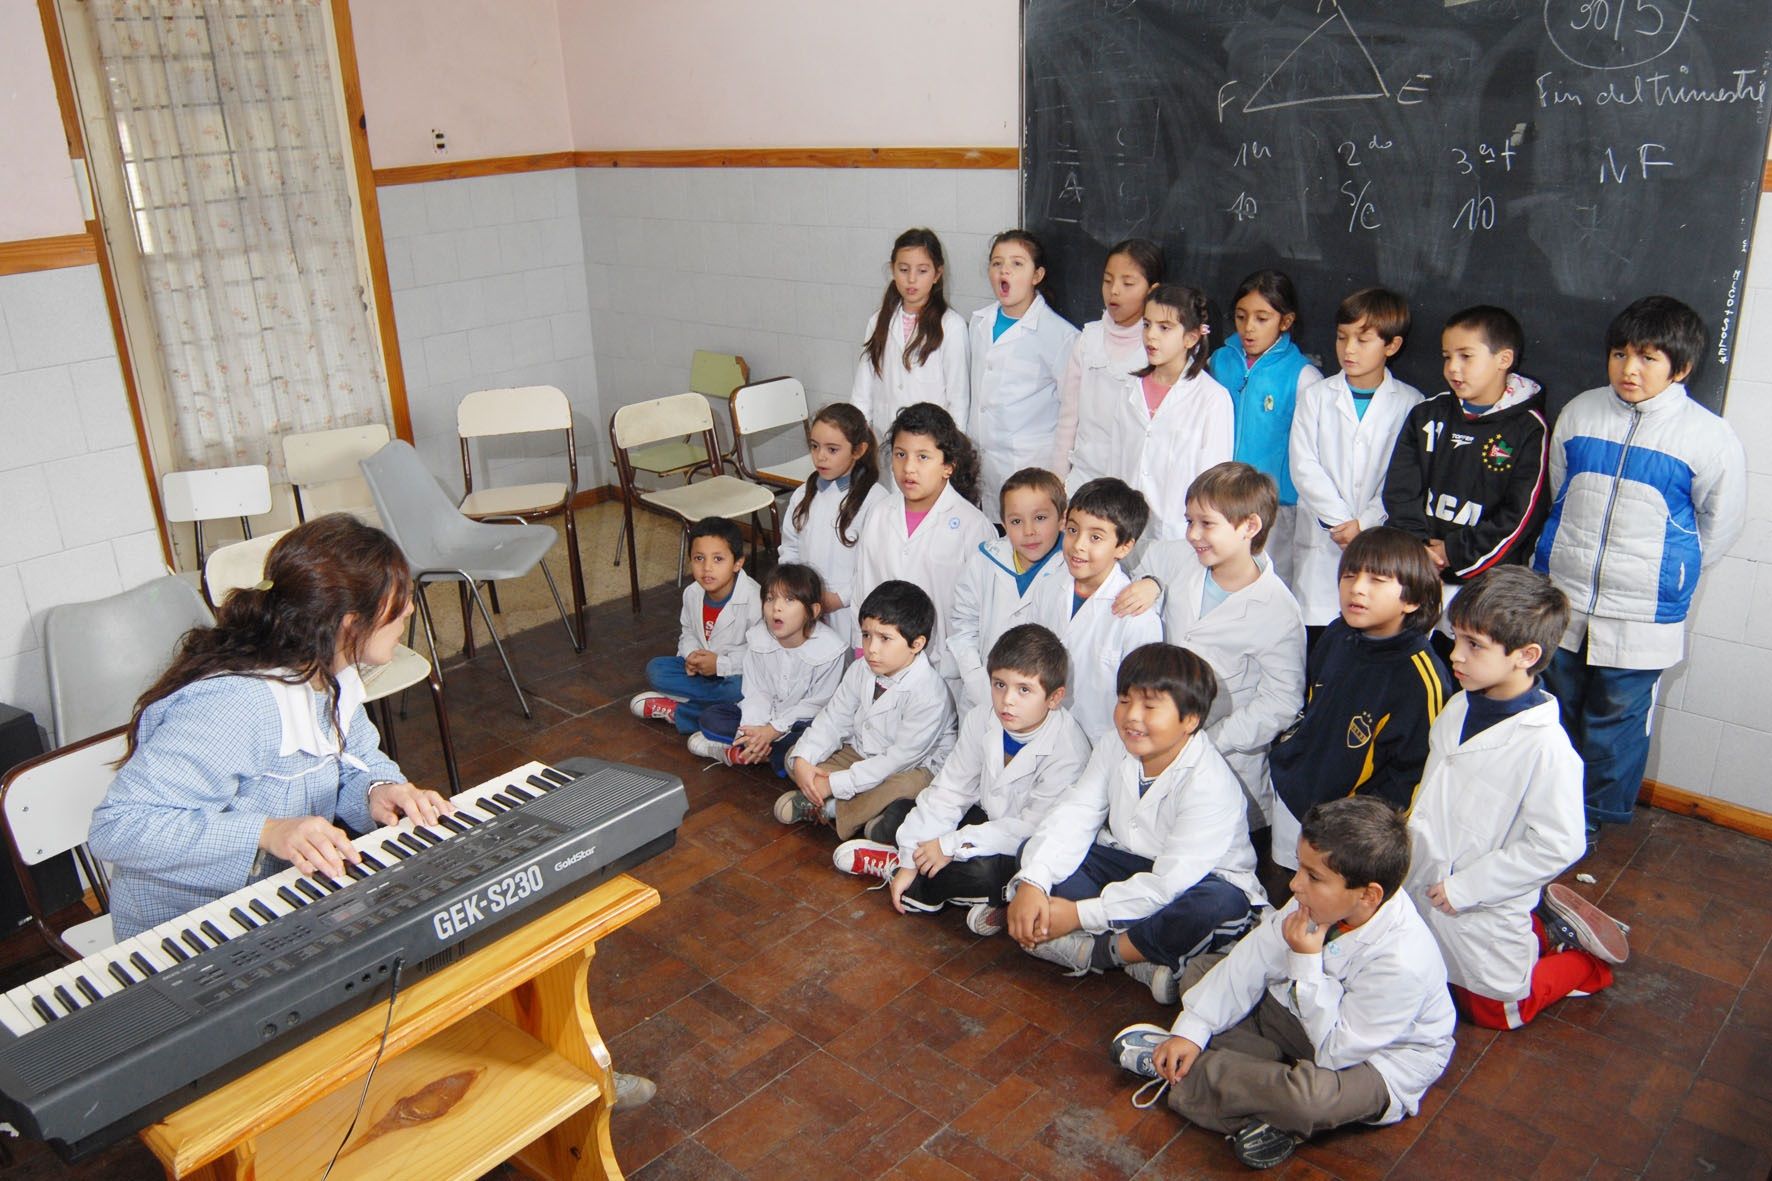 Niños en clase de Música2